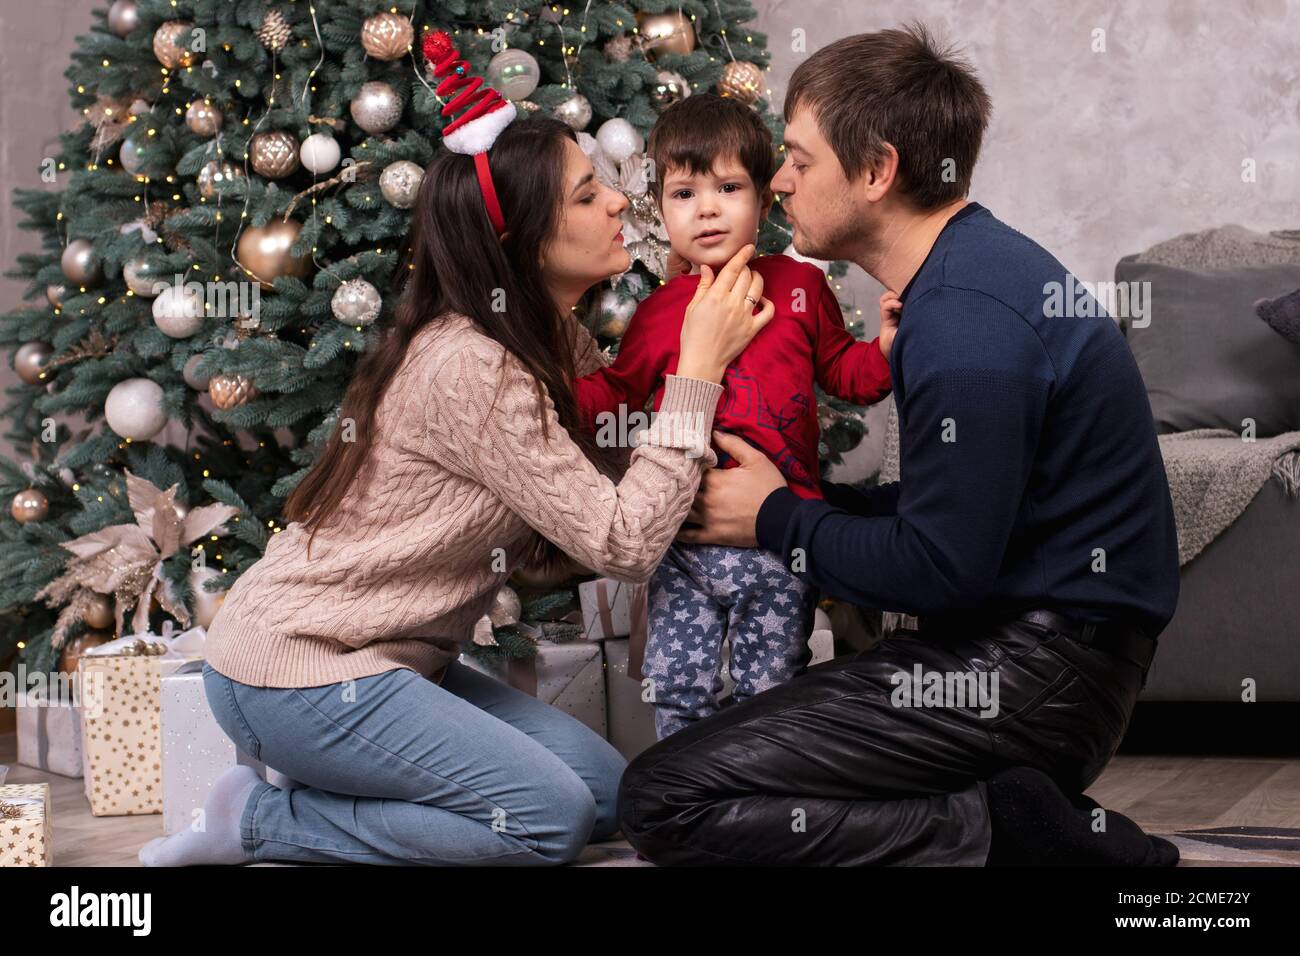 Maman et papa embrassent un jeune fils près de l'arbre de Noël. Bonne matinée du nouvel an en famille. Parents et enfant. Banque D'Images